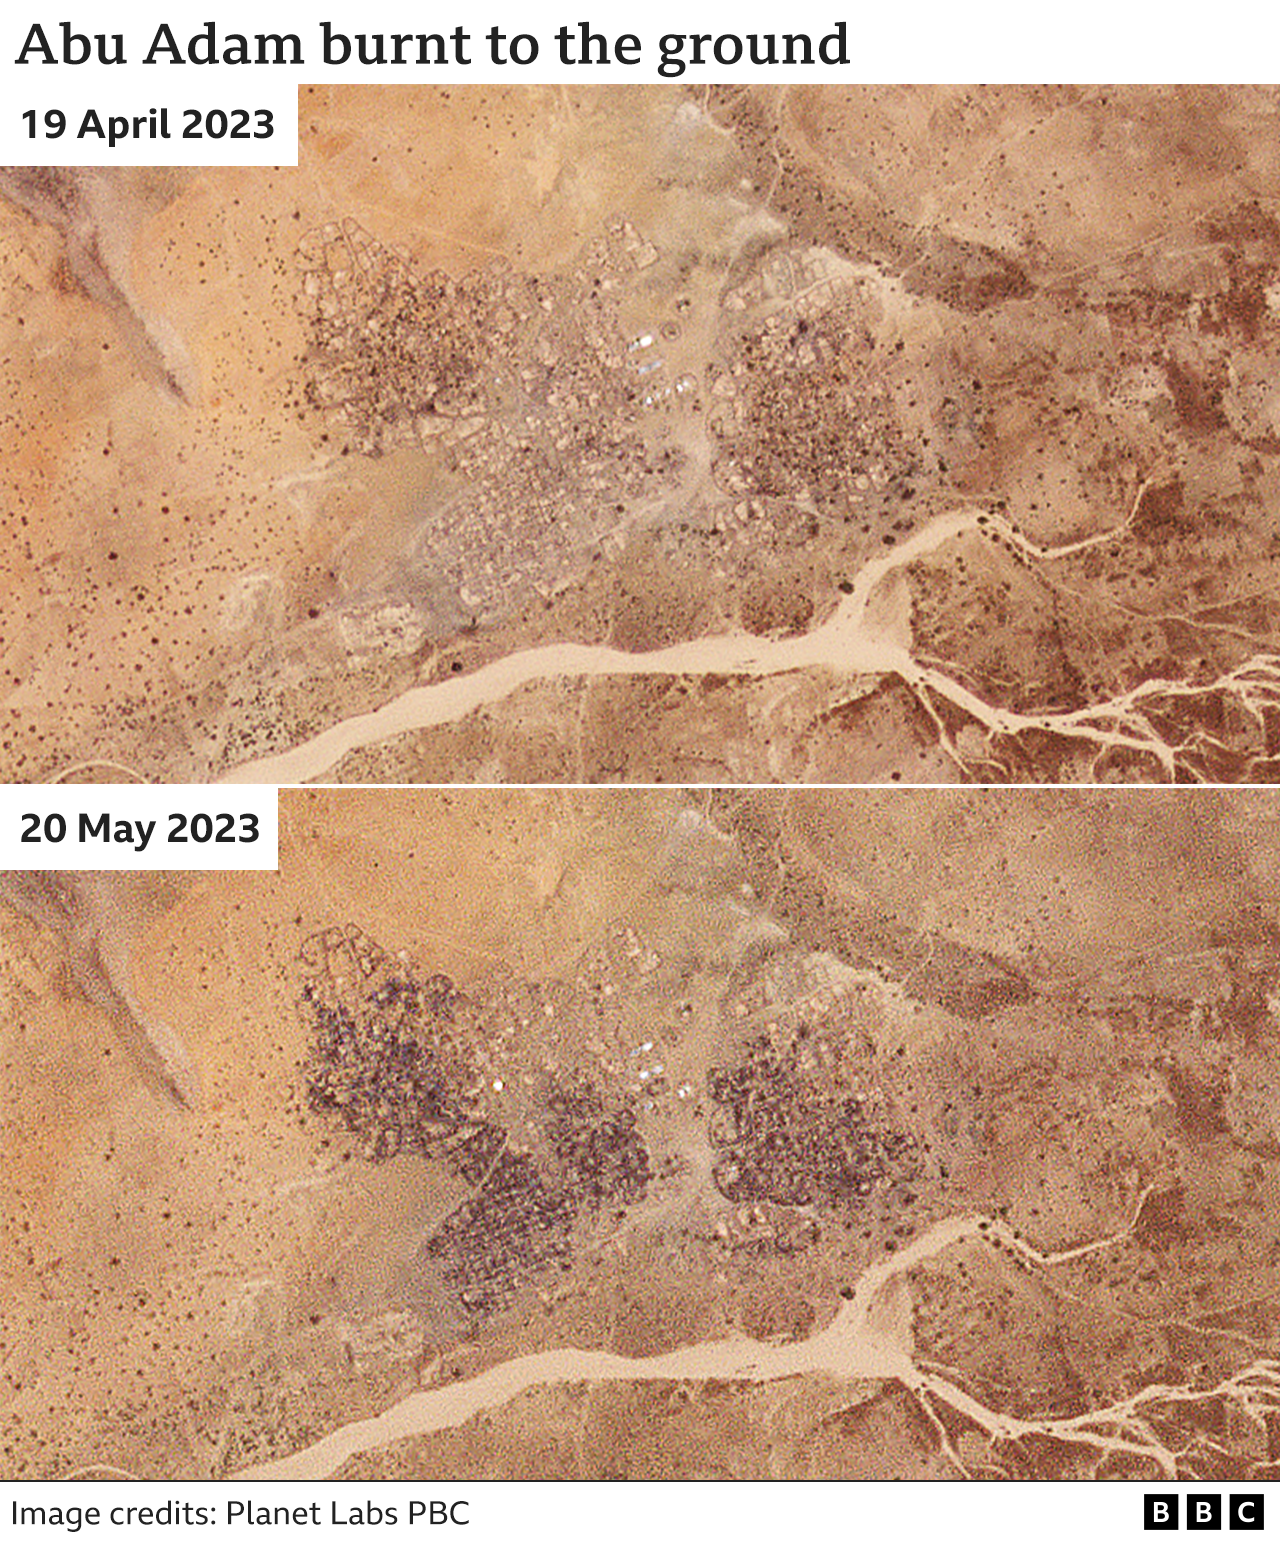 Спутниковые снимки показывают деревню Абу Адам и то, как она была почти полностью уничтожена огнем в период с апреля по май 2023 года